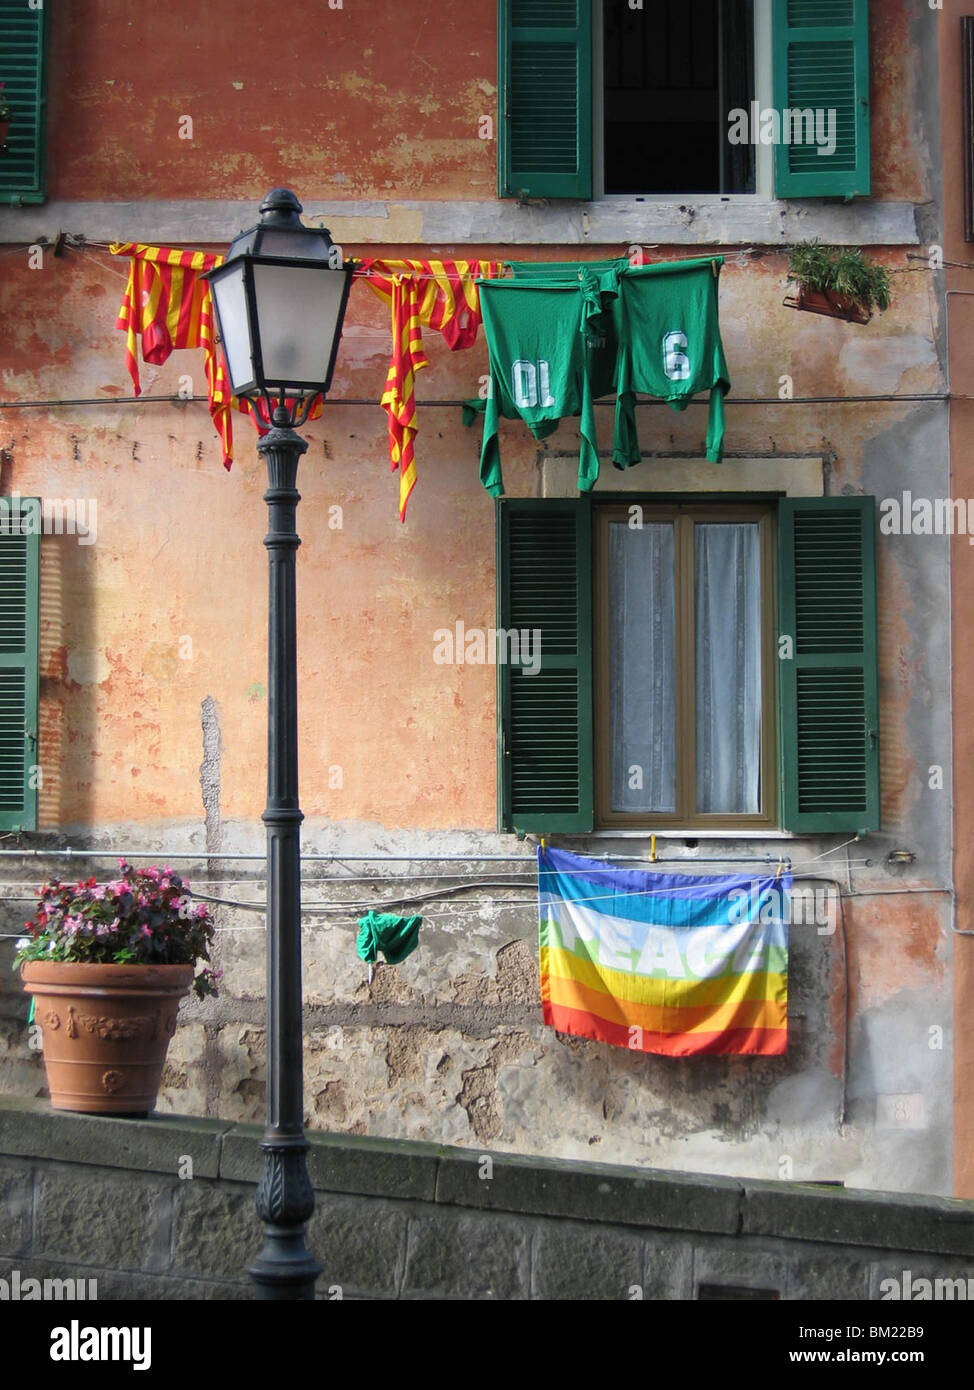 Bandiera della pace appesa al muro di una casa nella piccola città italiana Castel Gandolfo, sulla sommità di un antico vulcano. Foto Stock